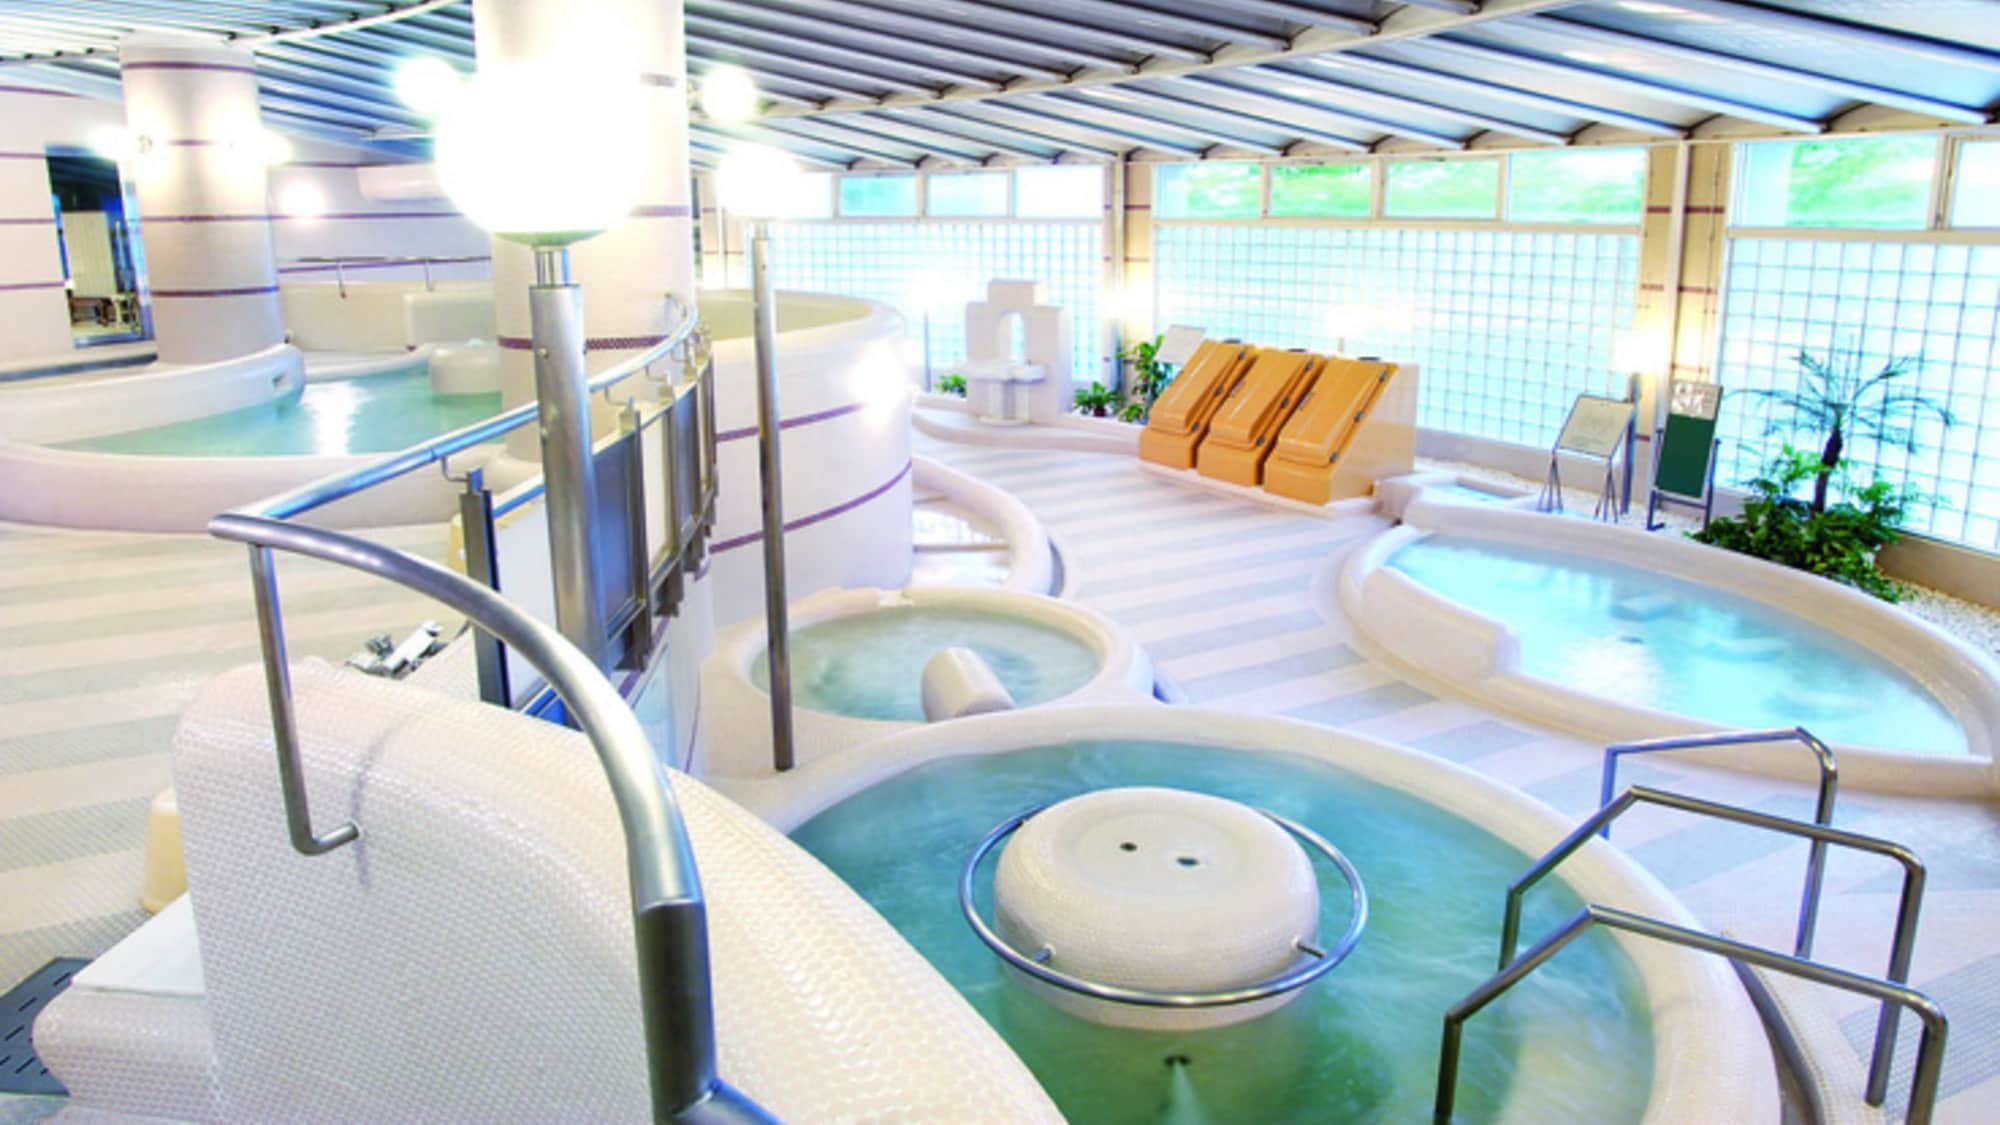 Anda dapat menikmati 5 jenis pemandian dan sauna di pemandian dalam ruangan.